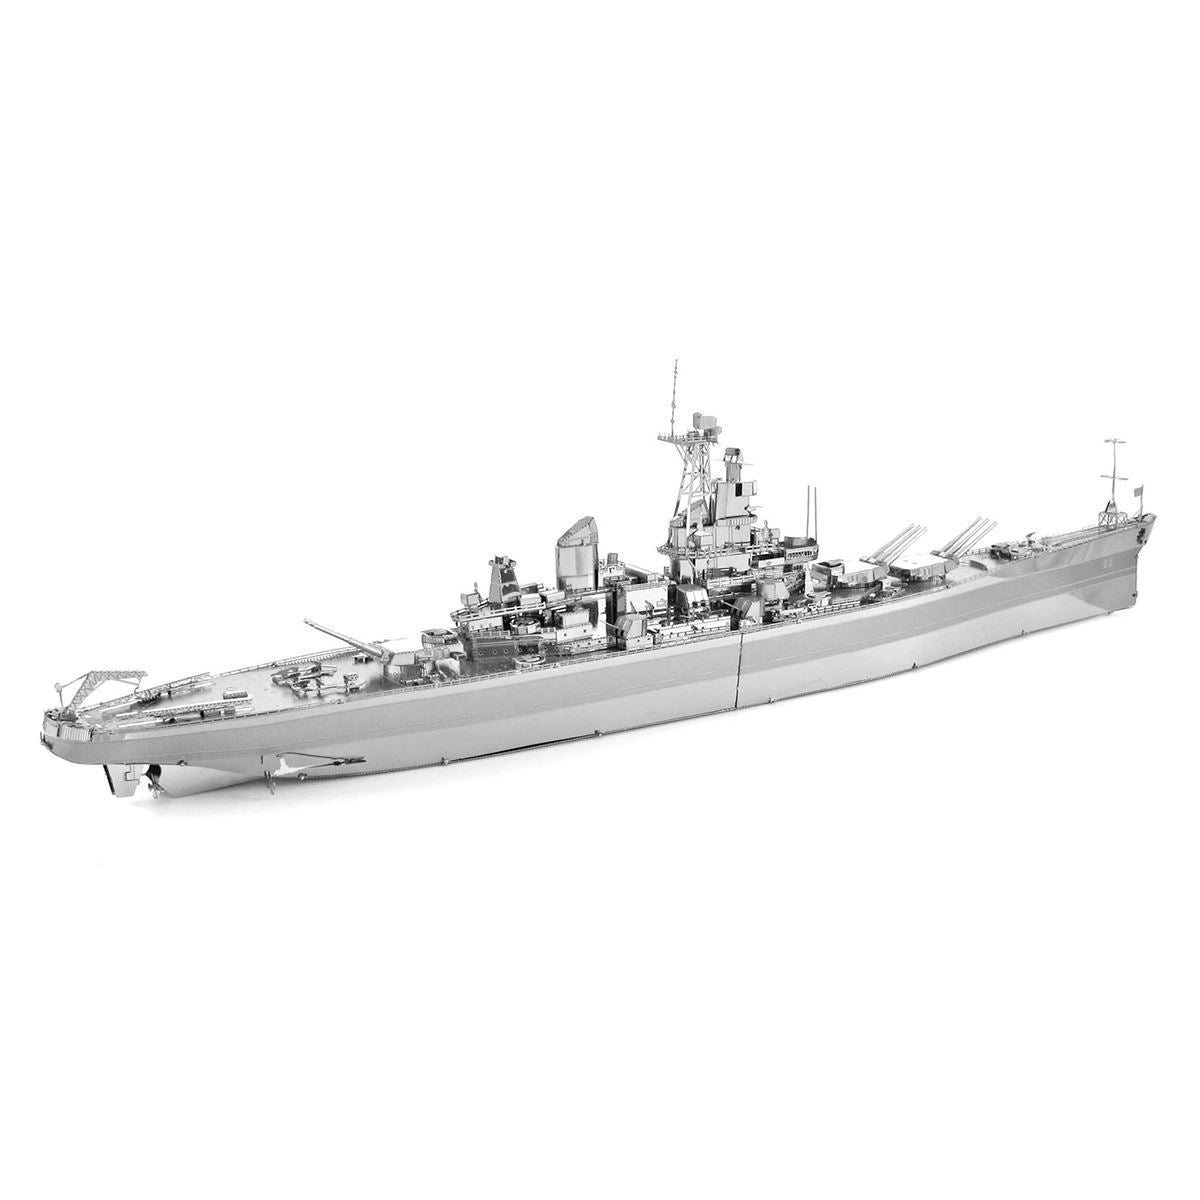 ICONX USS MISSOURI - CAT SERVICE PERU S.A.C.